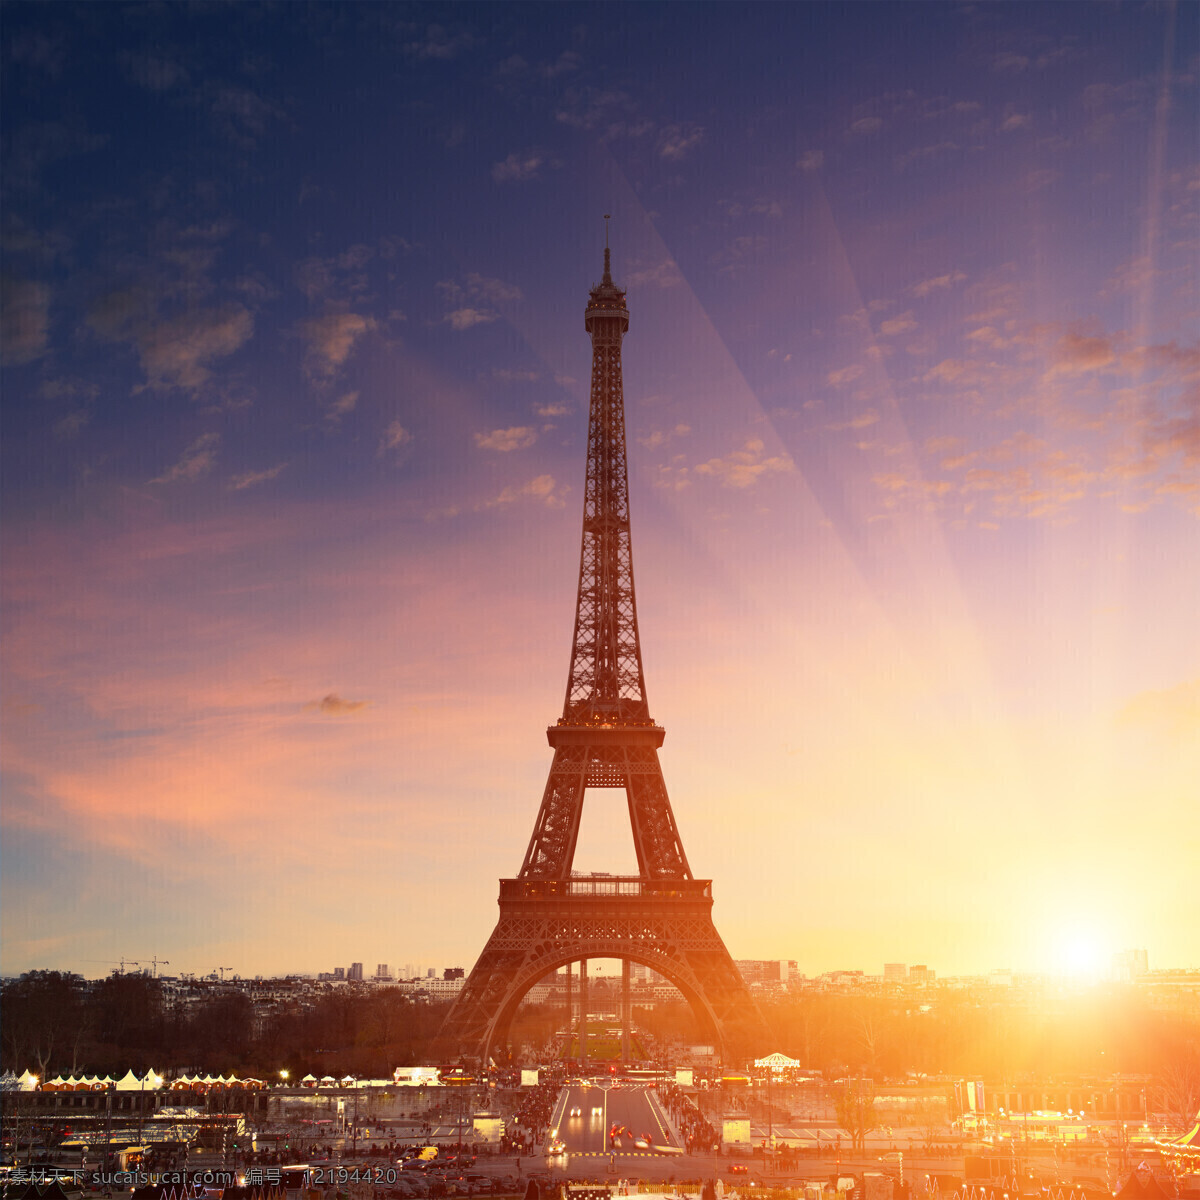 巴黎埃菲尔铁塔 埃菲尔铁塔 巴黎旅游景点 美丽风景 城市风景 风景图片